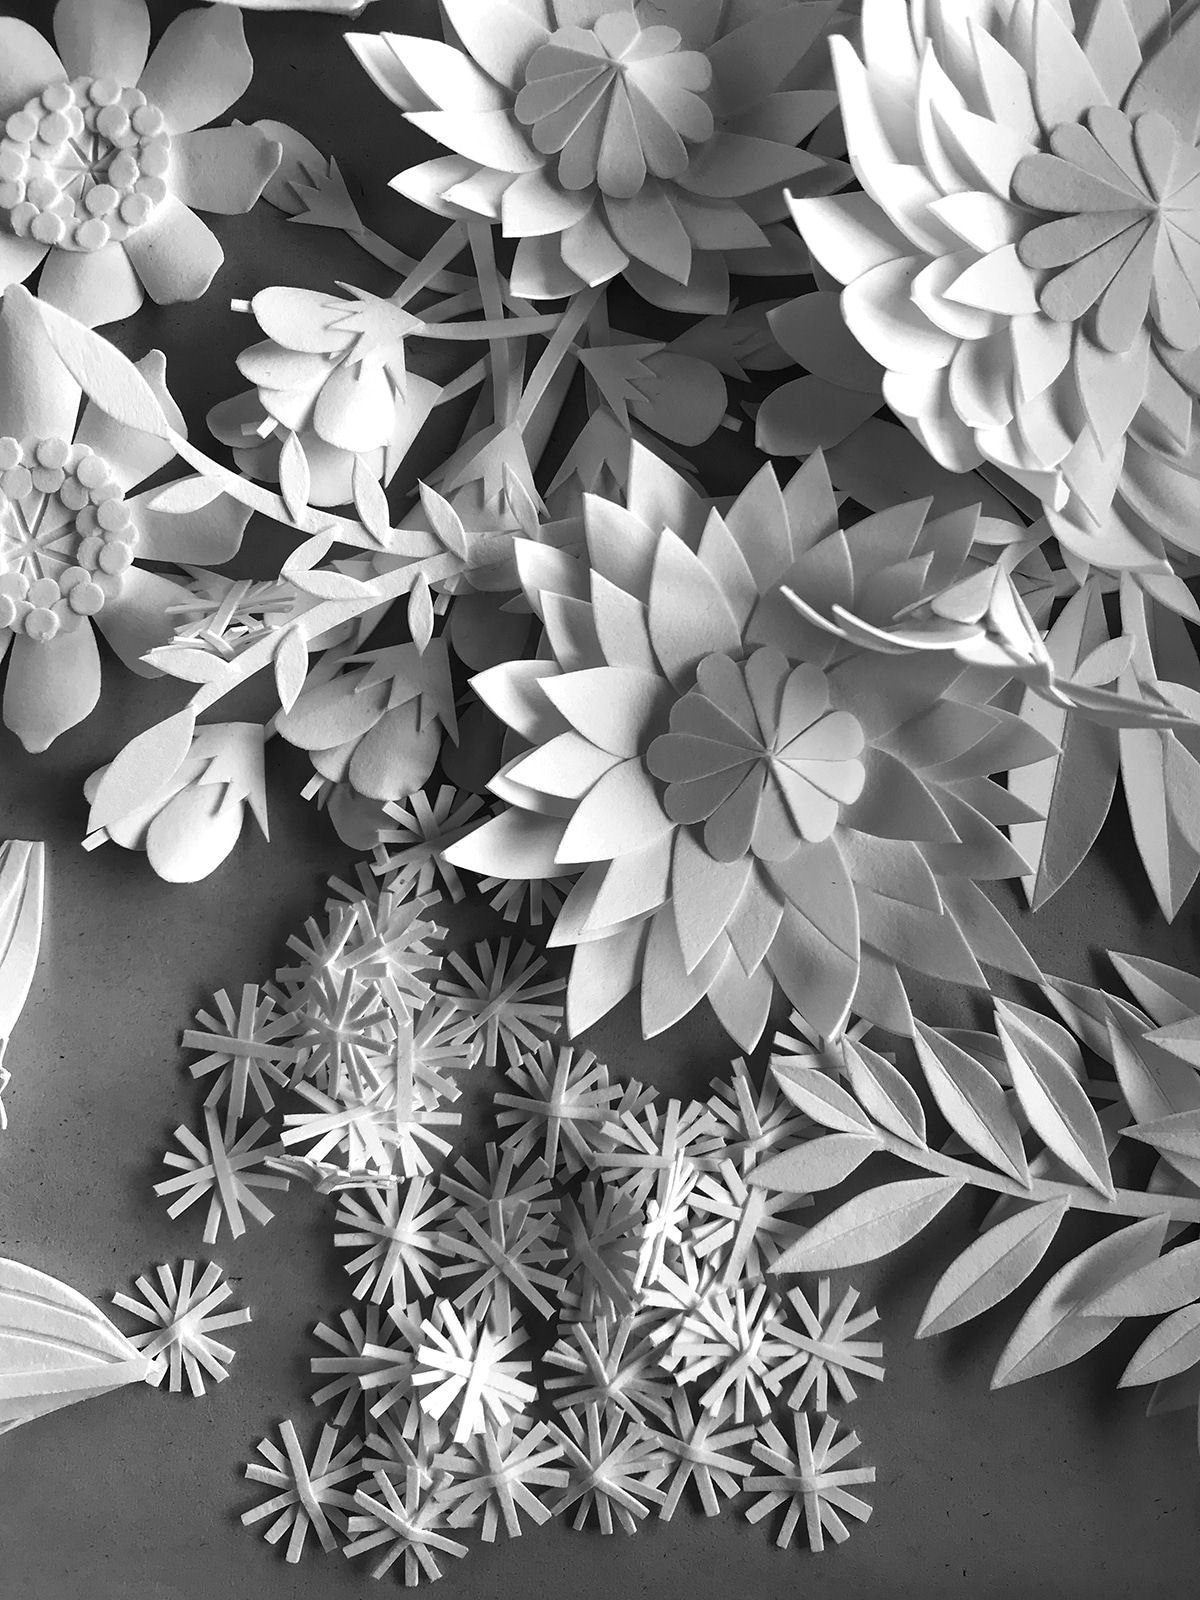 Artista cria 'jardins' exuberantes com flores de papel caprichosamente cortadas 06